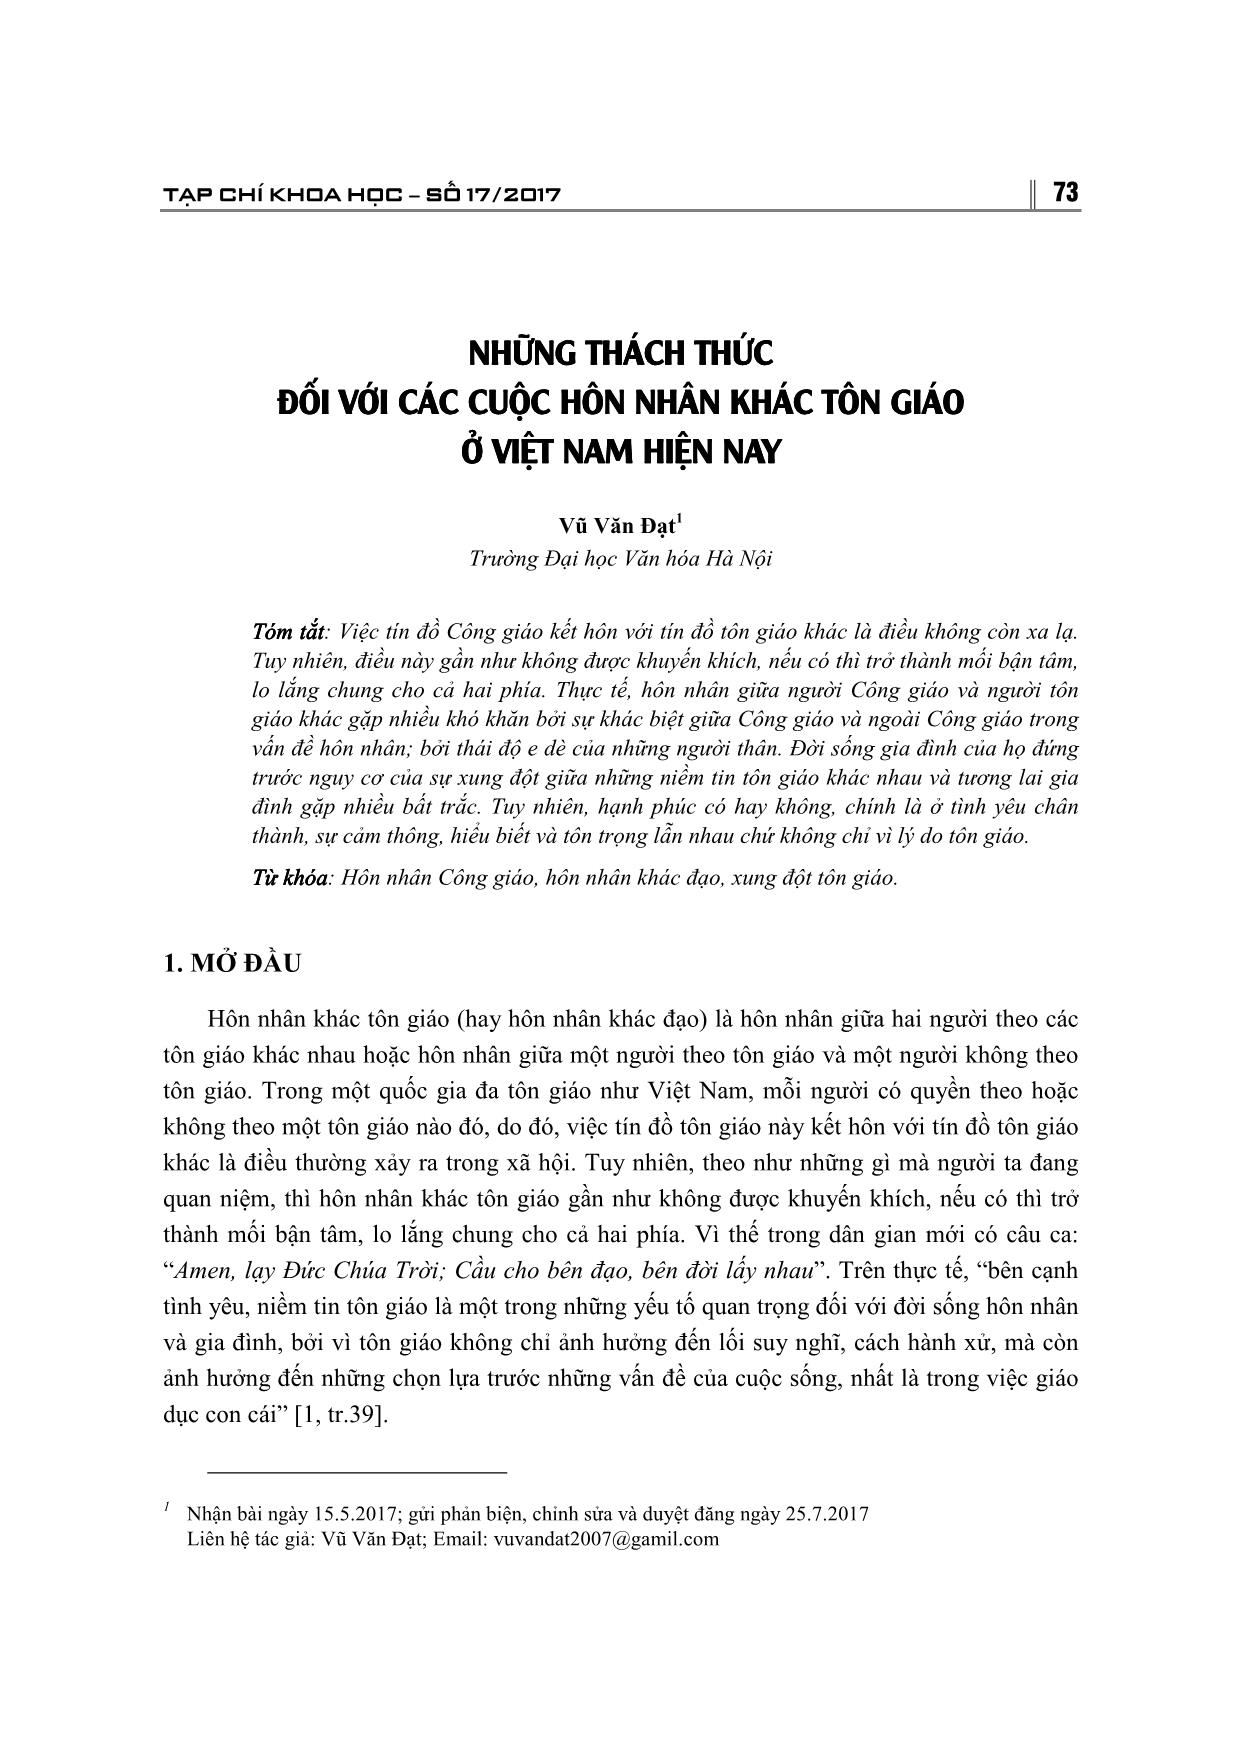 Những thách thức đối với cuộc hôn nhân khác tôn giáo ở Việt Nam hiện nay trang 1